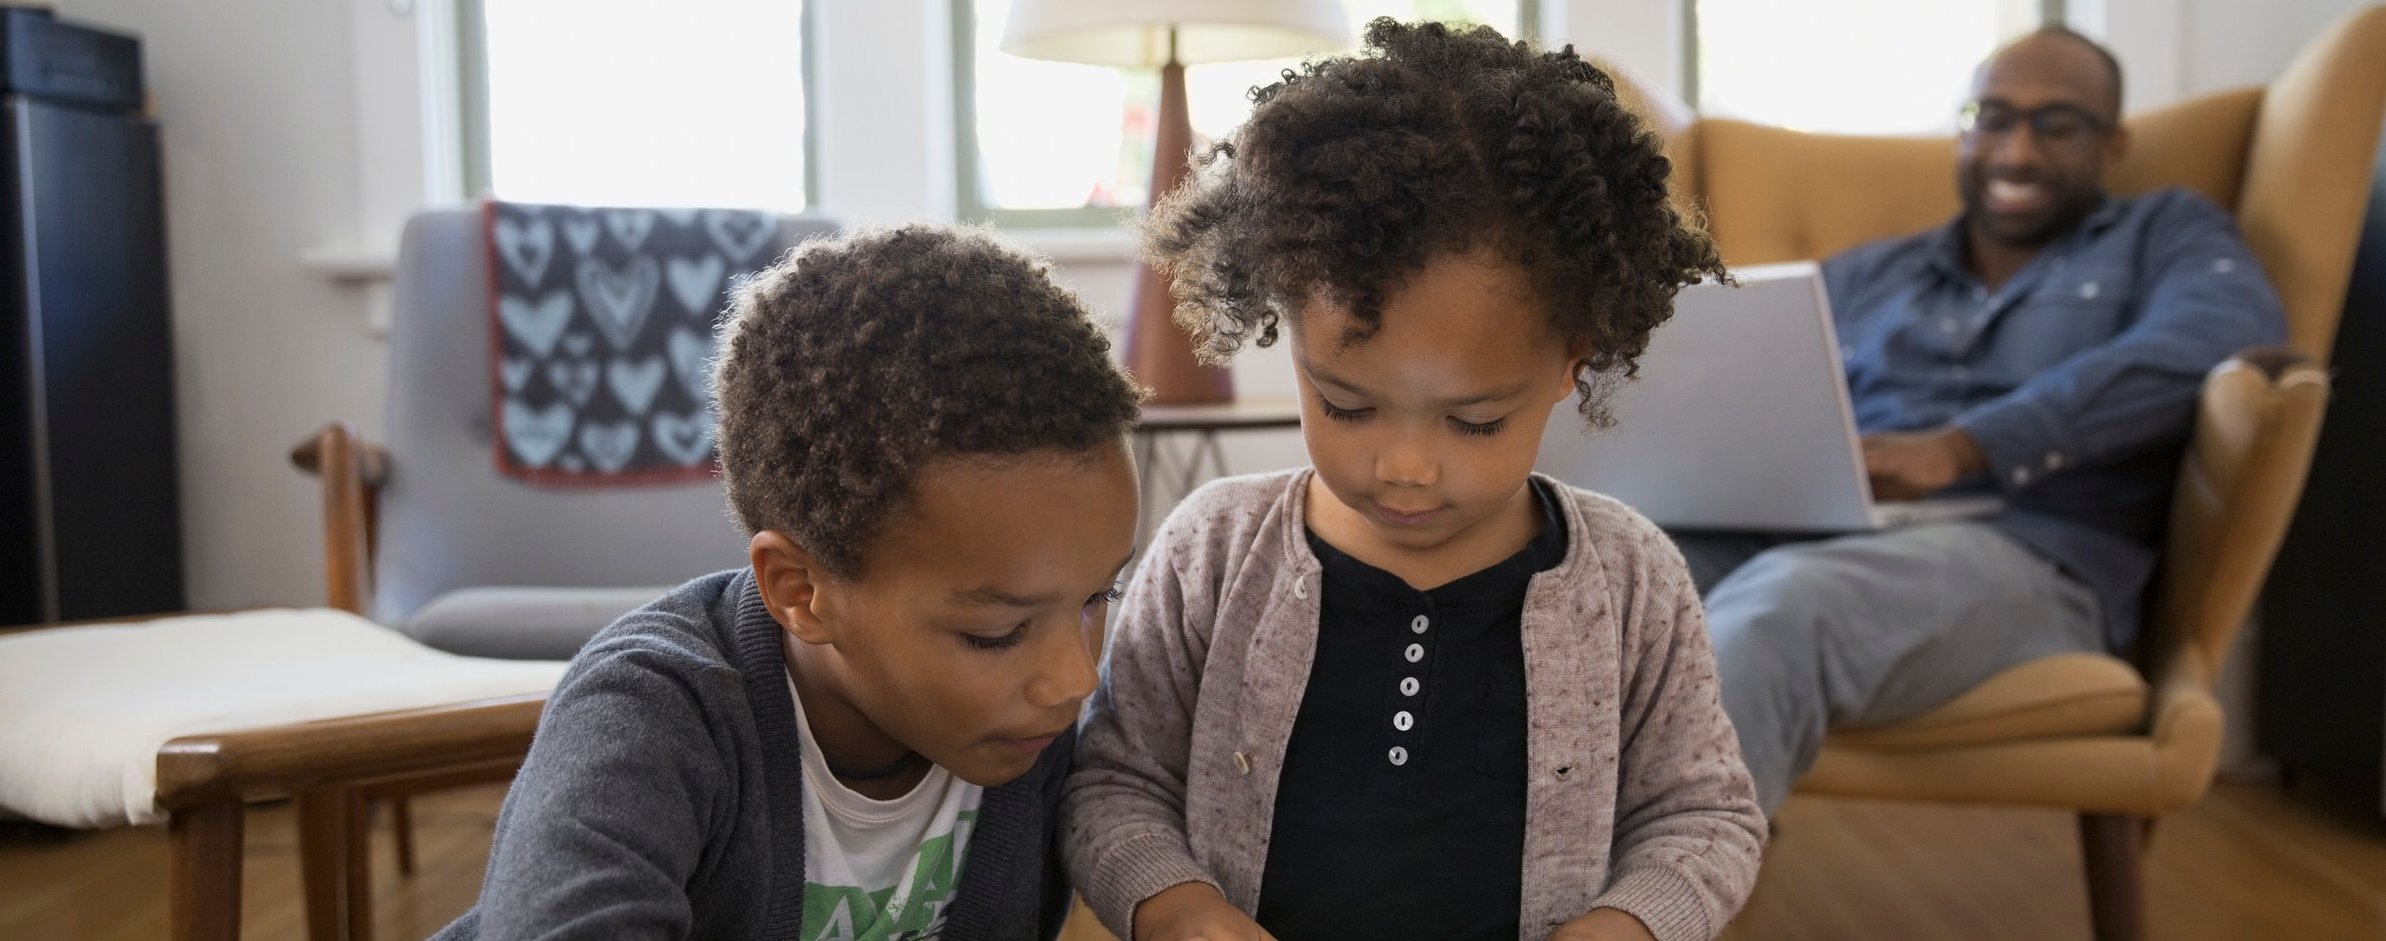 Enfants partageant un moment ensemble sur une tablette numérique